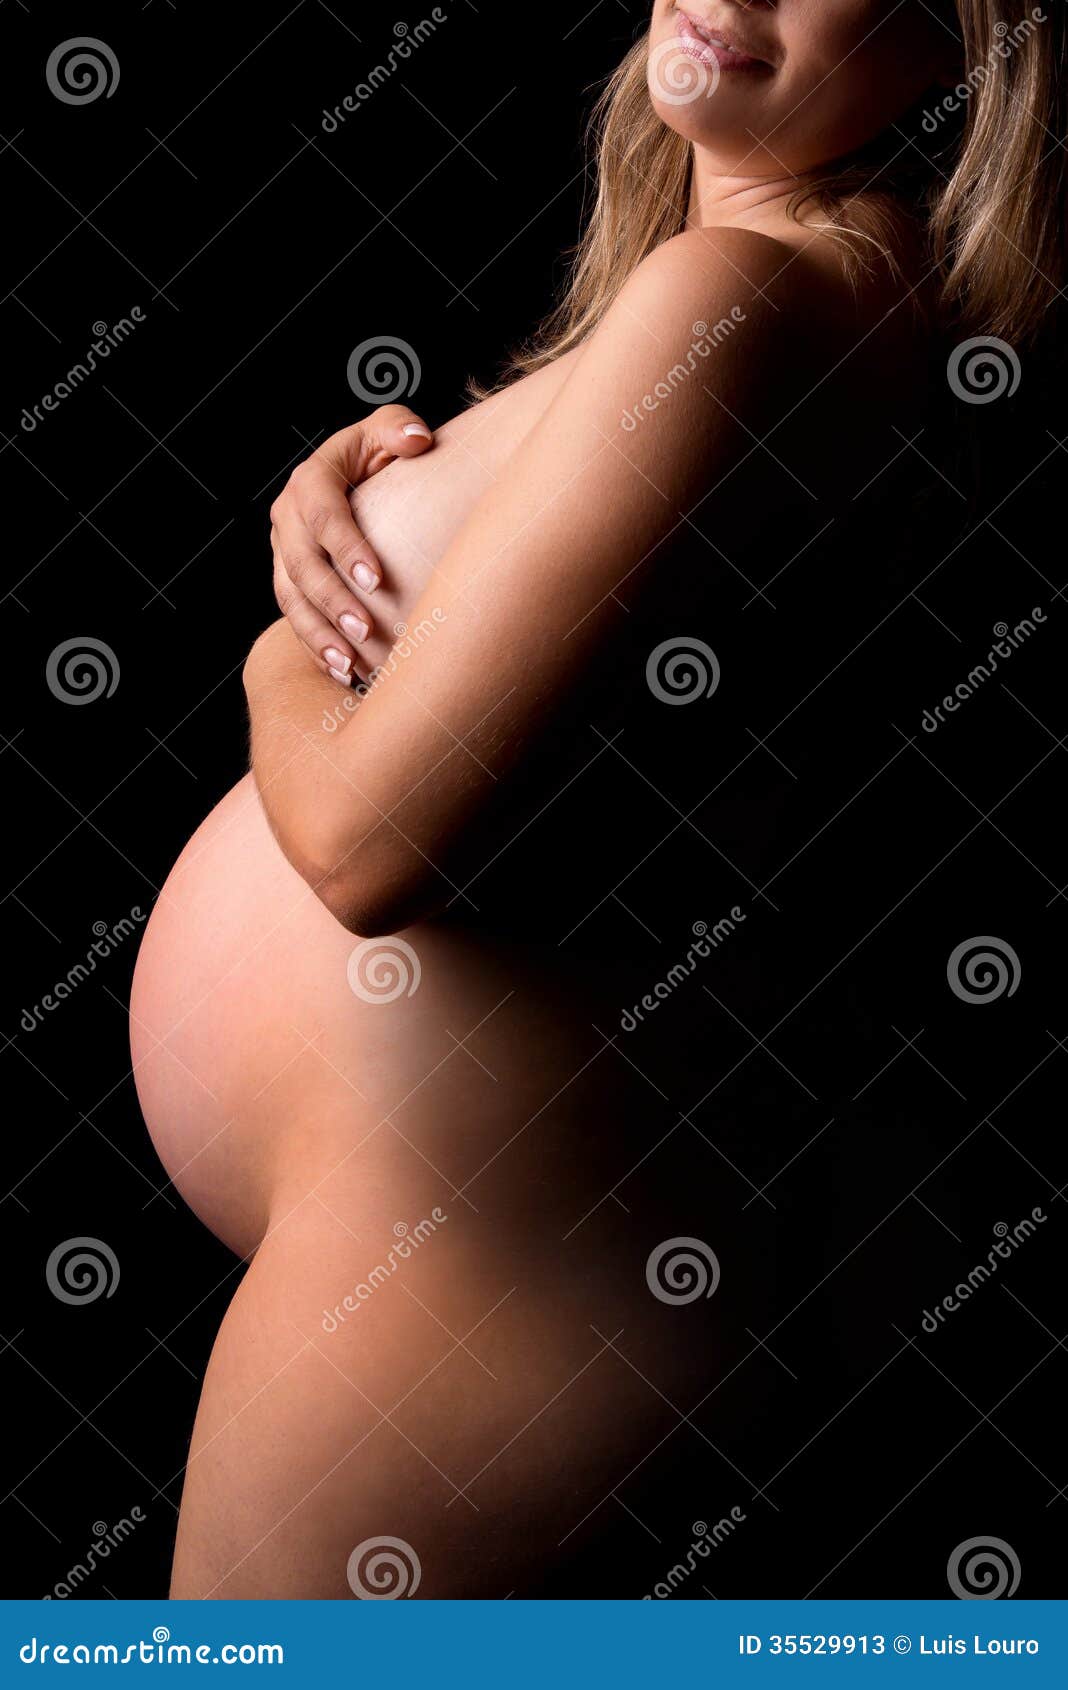 фигура беременной голые фото 17